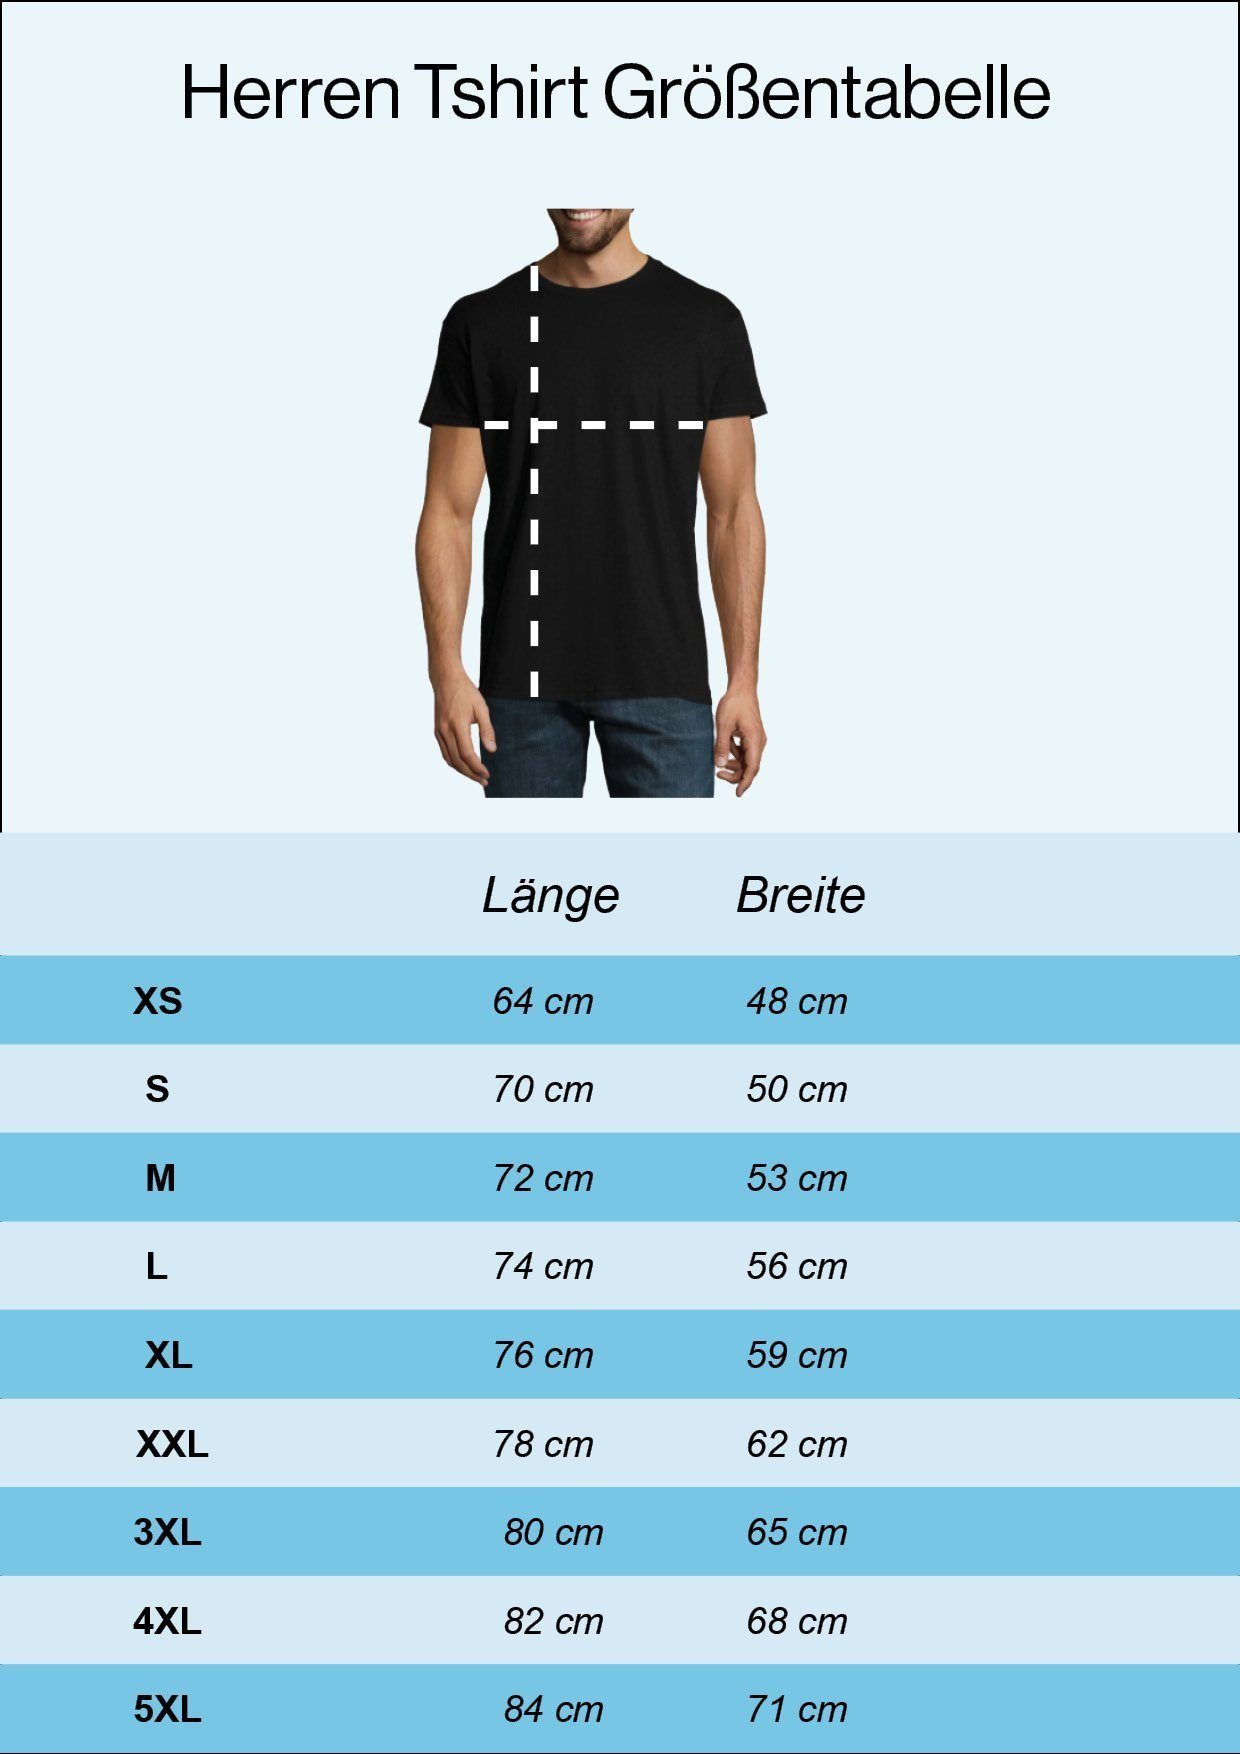 modischem T-Shirt Bike Print-Shirt Heartbeat Aufdruck Designz Youth Motorrad Herren Navyblau mit